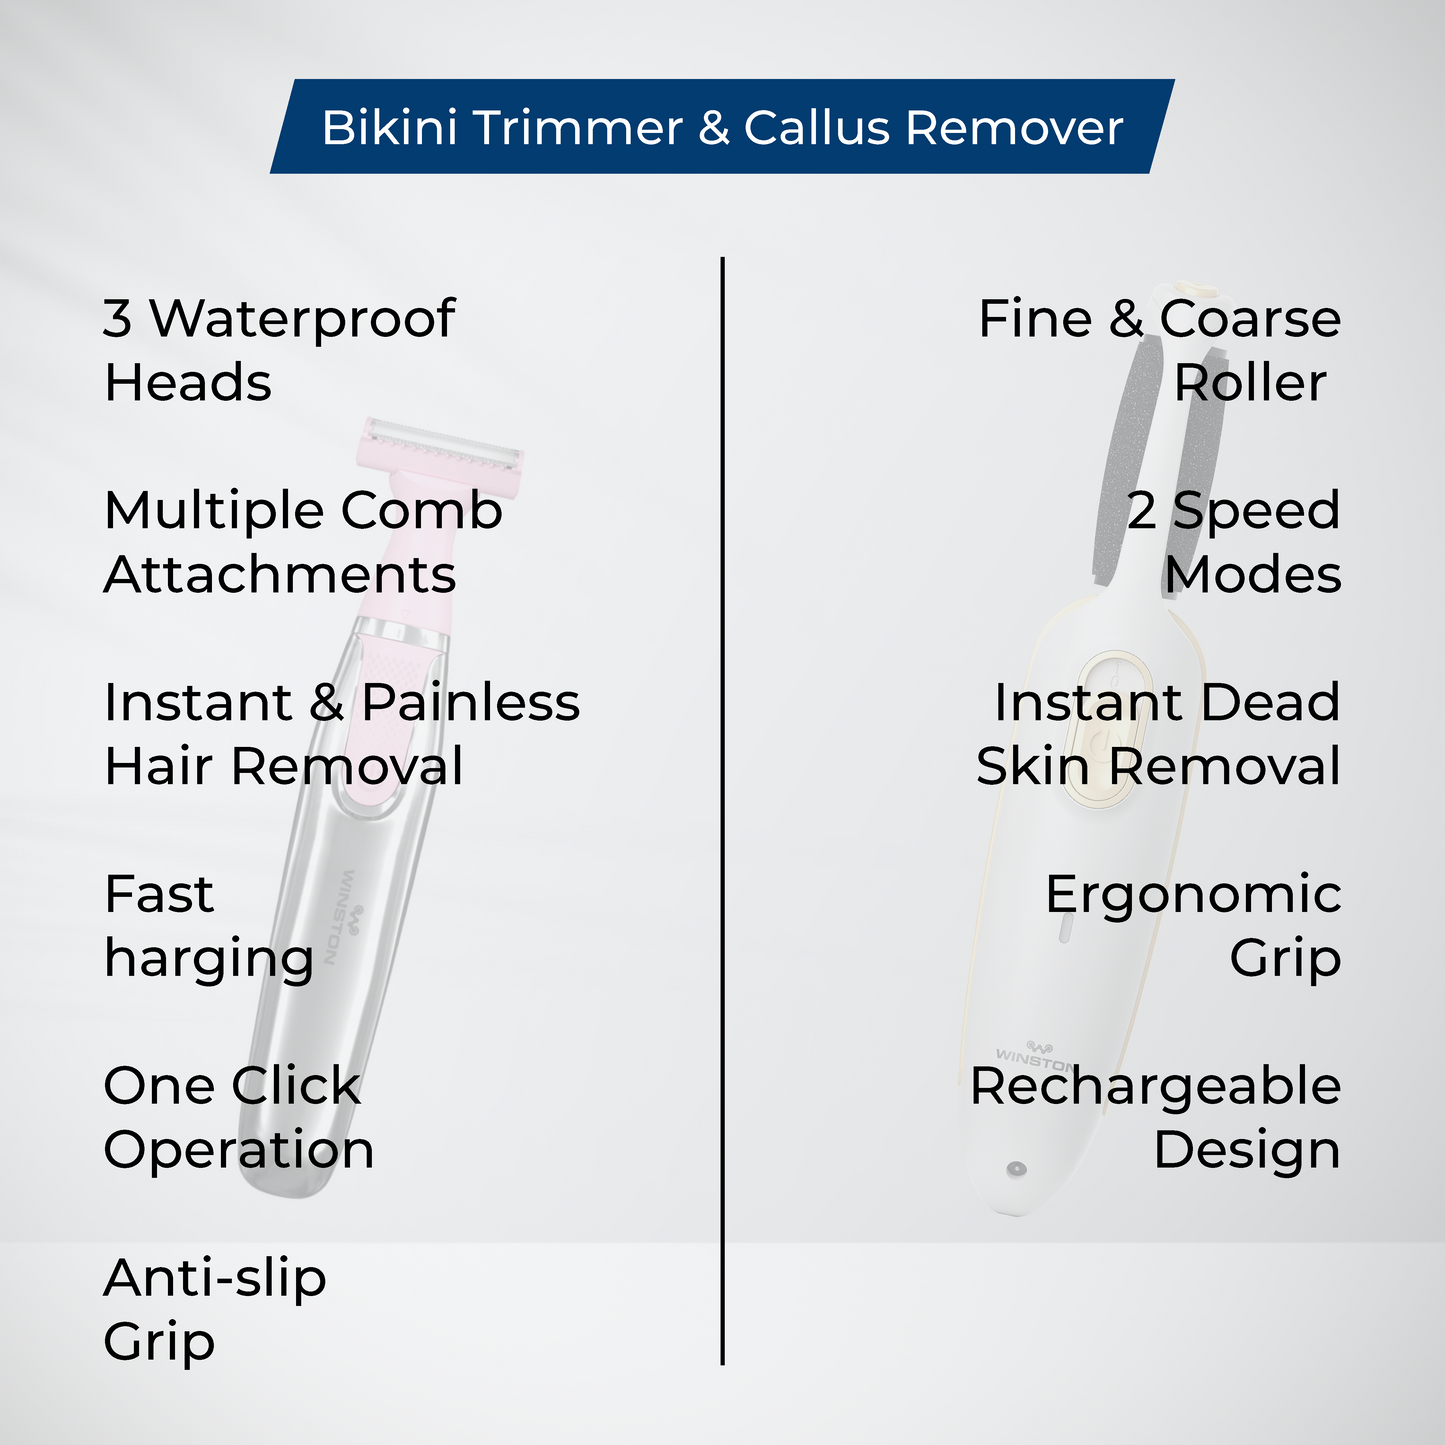 Bikini Trimmer & Callus Remover Combo